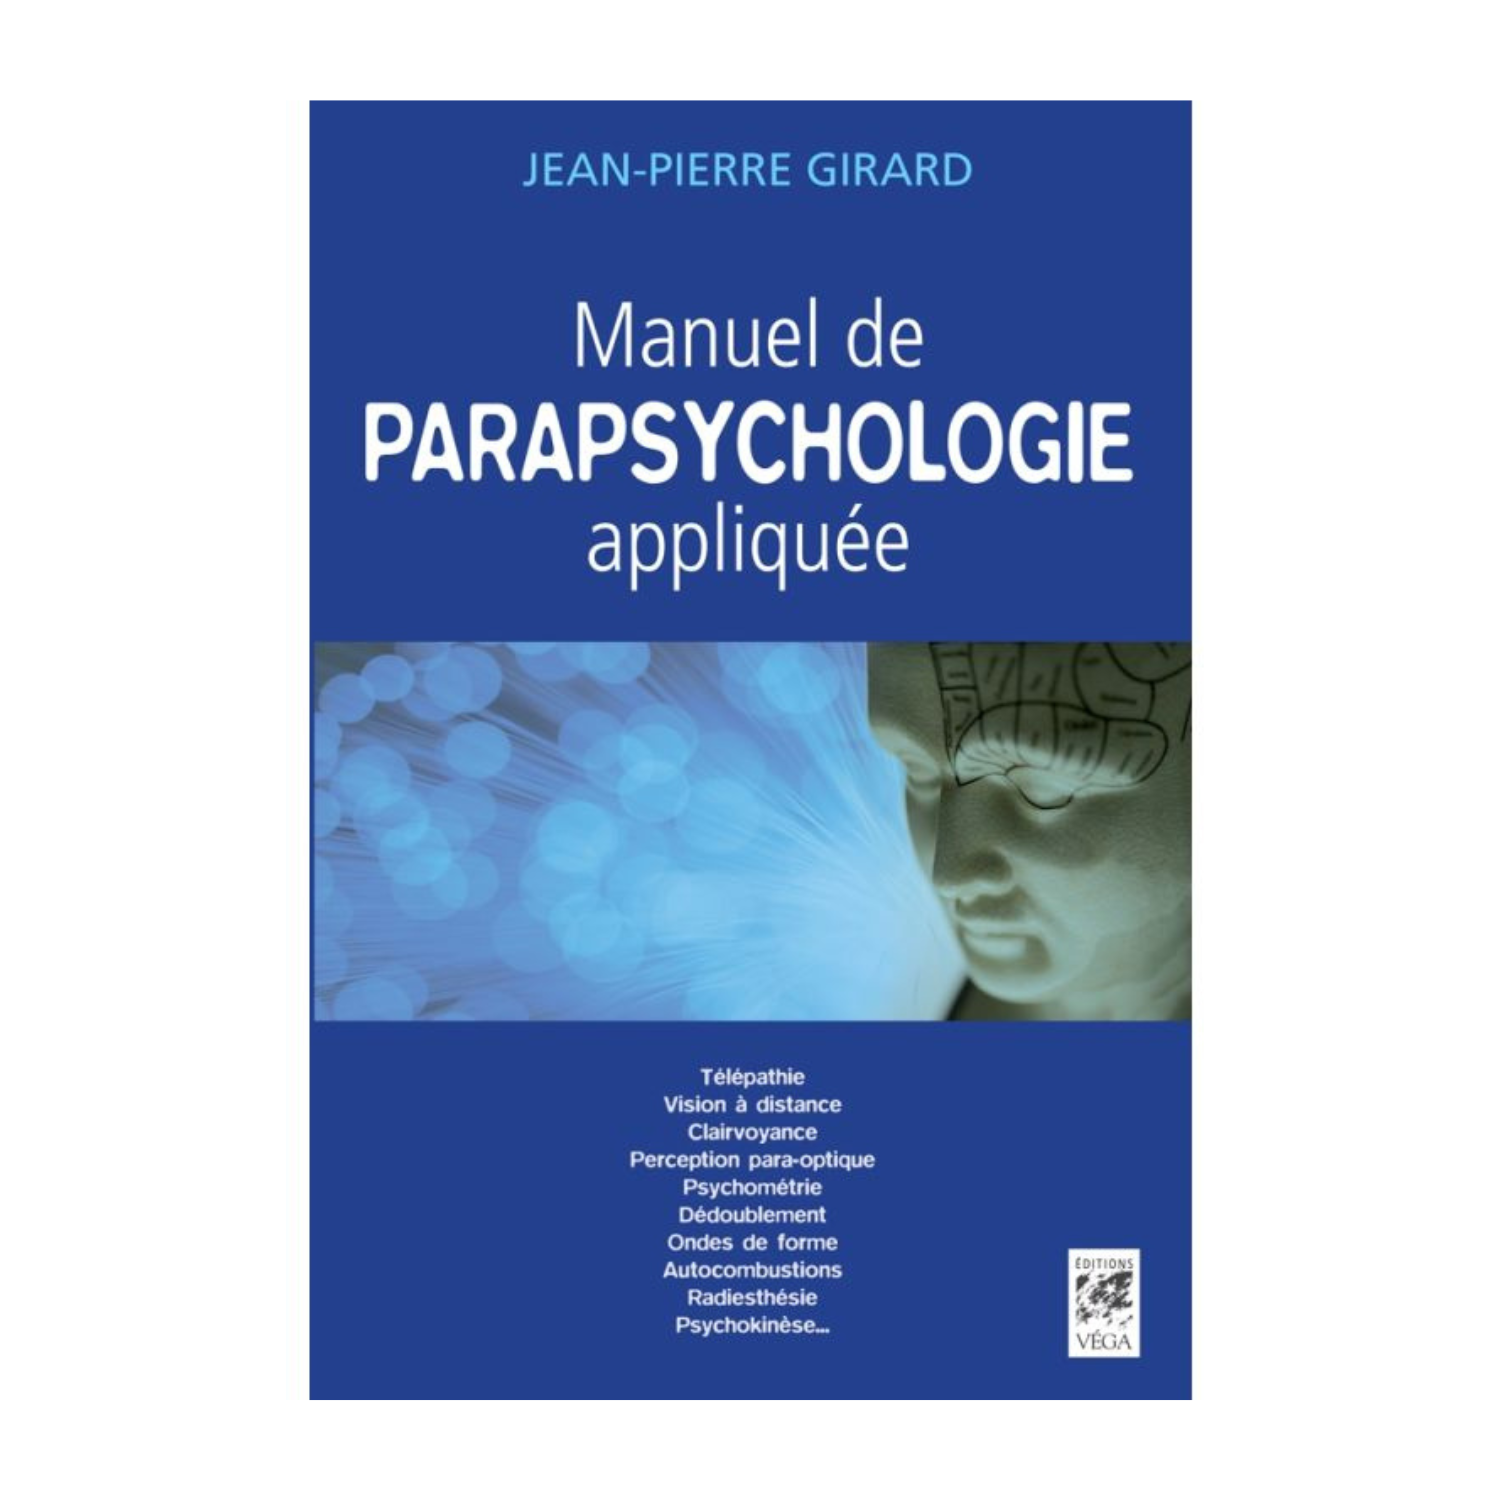 Manuel de parapsychologie appliquée